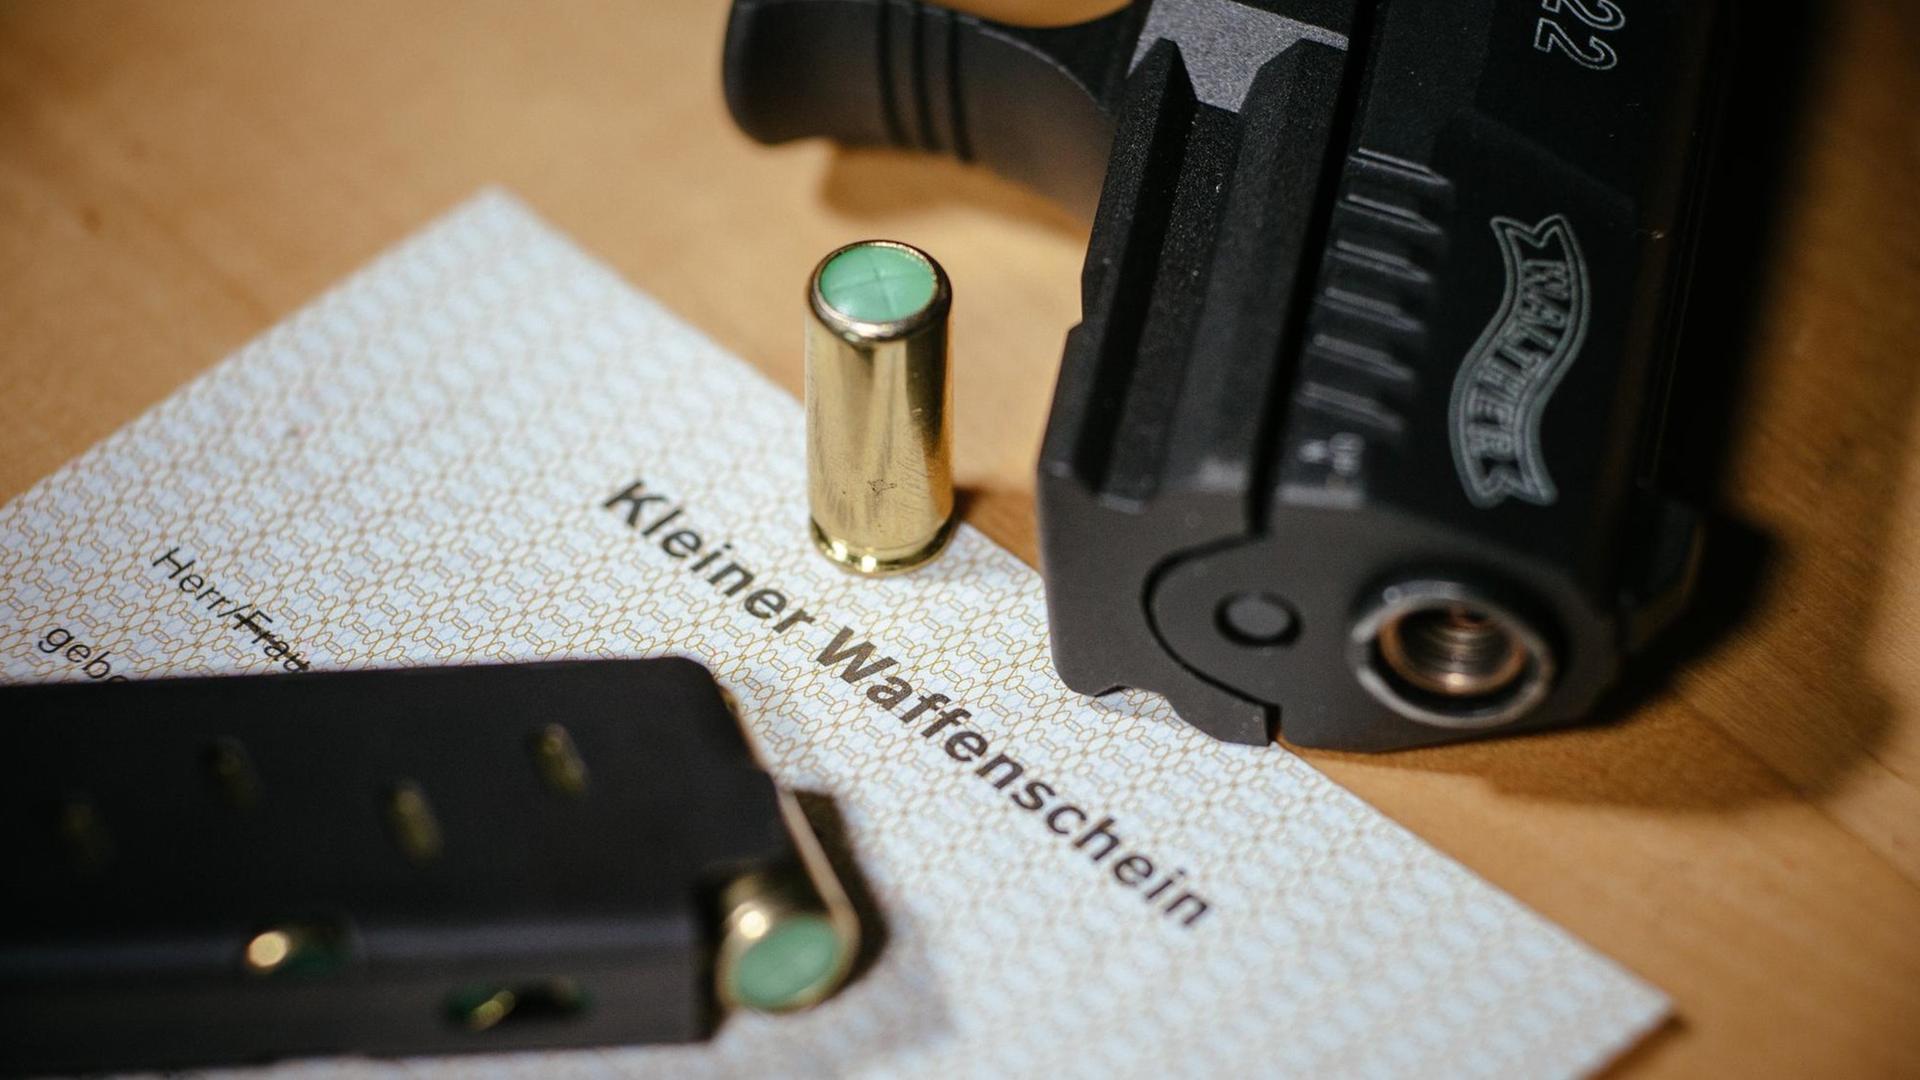 Ein Kleiner Waffenschein liegt zwischen einer Schreckschuss-Pistole "Walther P22", einem Magazin und einer Knallpatrone. Das Dokument berechtigt den Besitzer zum Tragen einer solchen Waffe in der Öffentlichkeit.